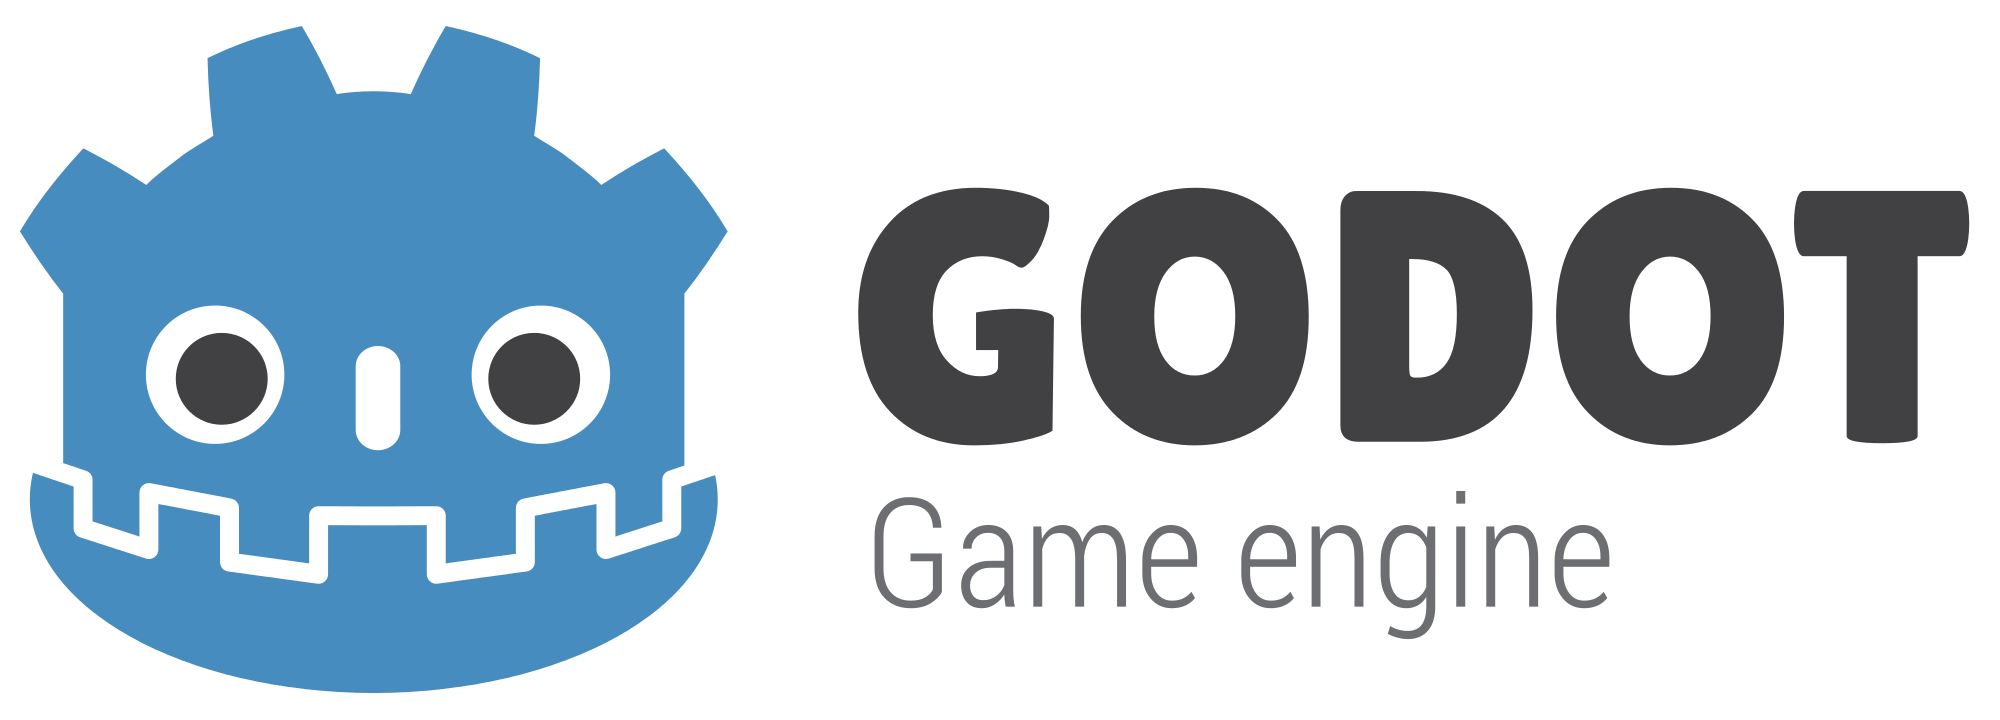 godot-logo